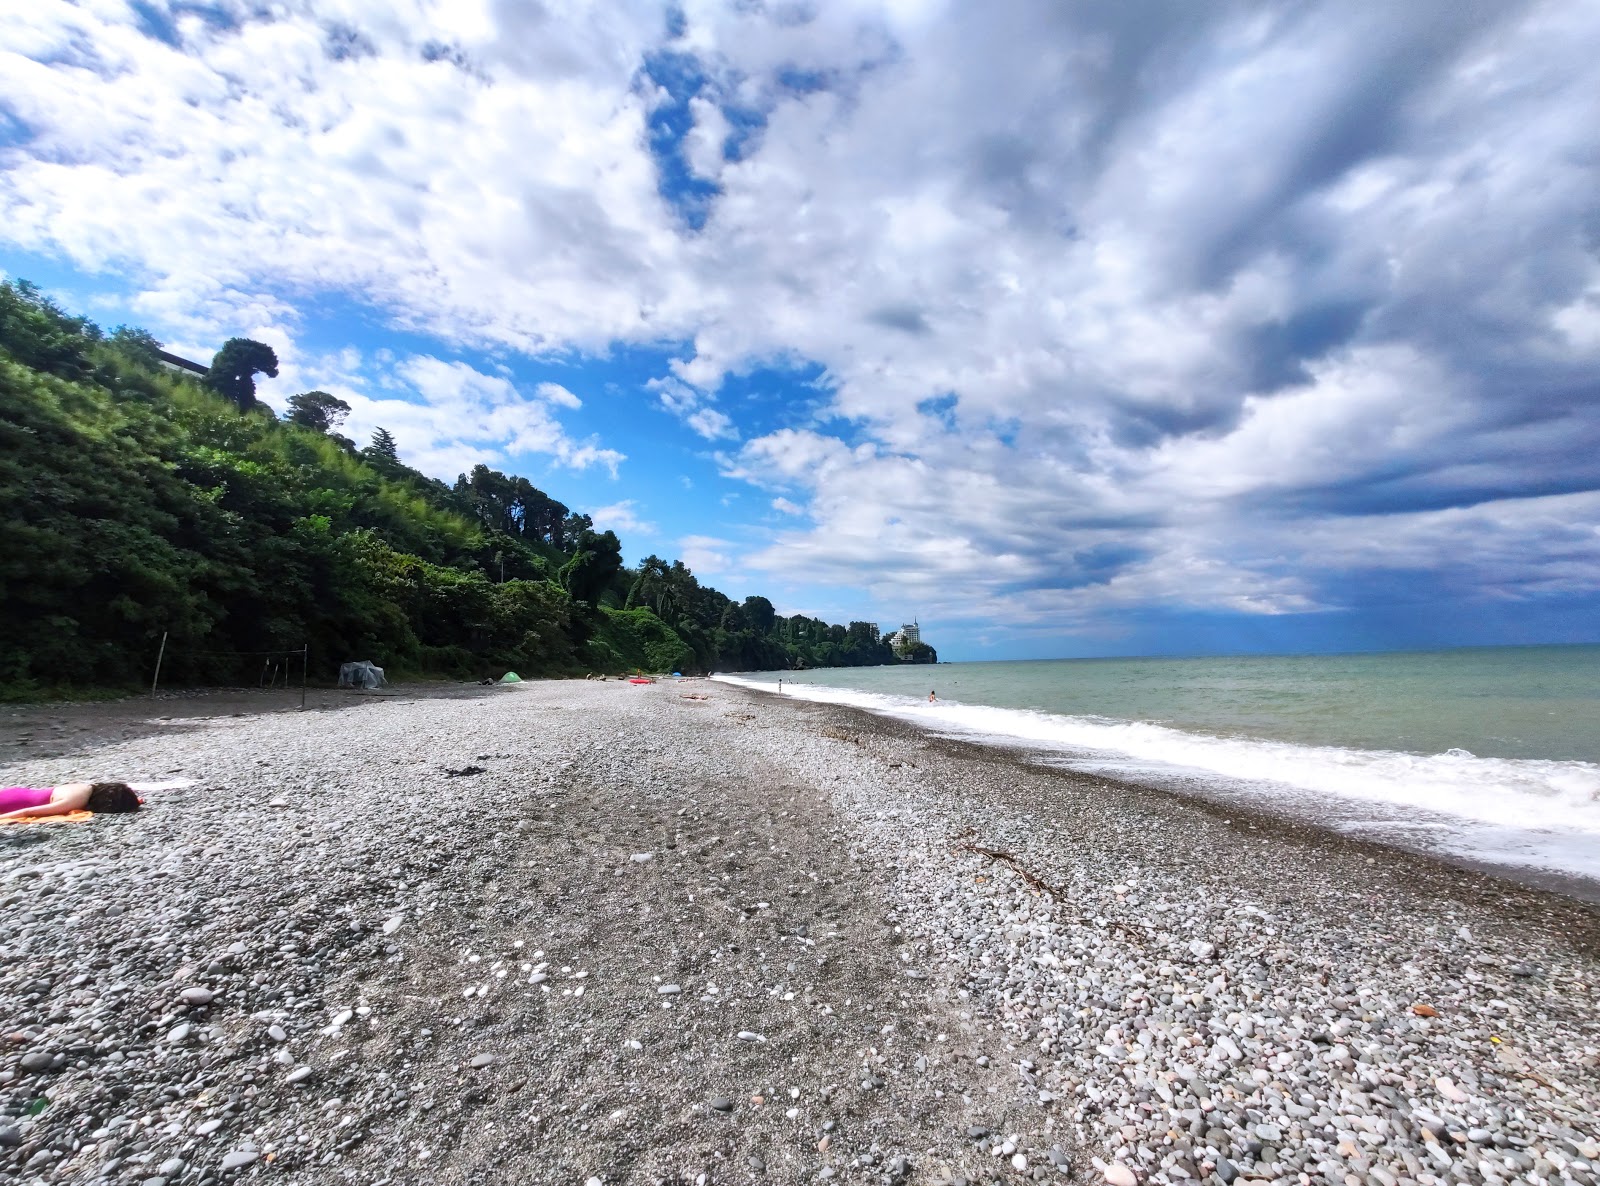 Tsikhisdziri beach II'in fotoğrafı hafif çakıl yüzey ile